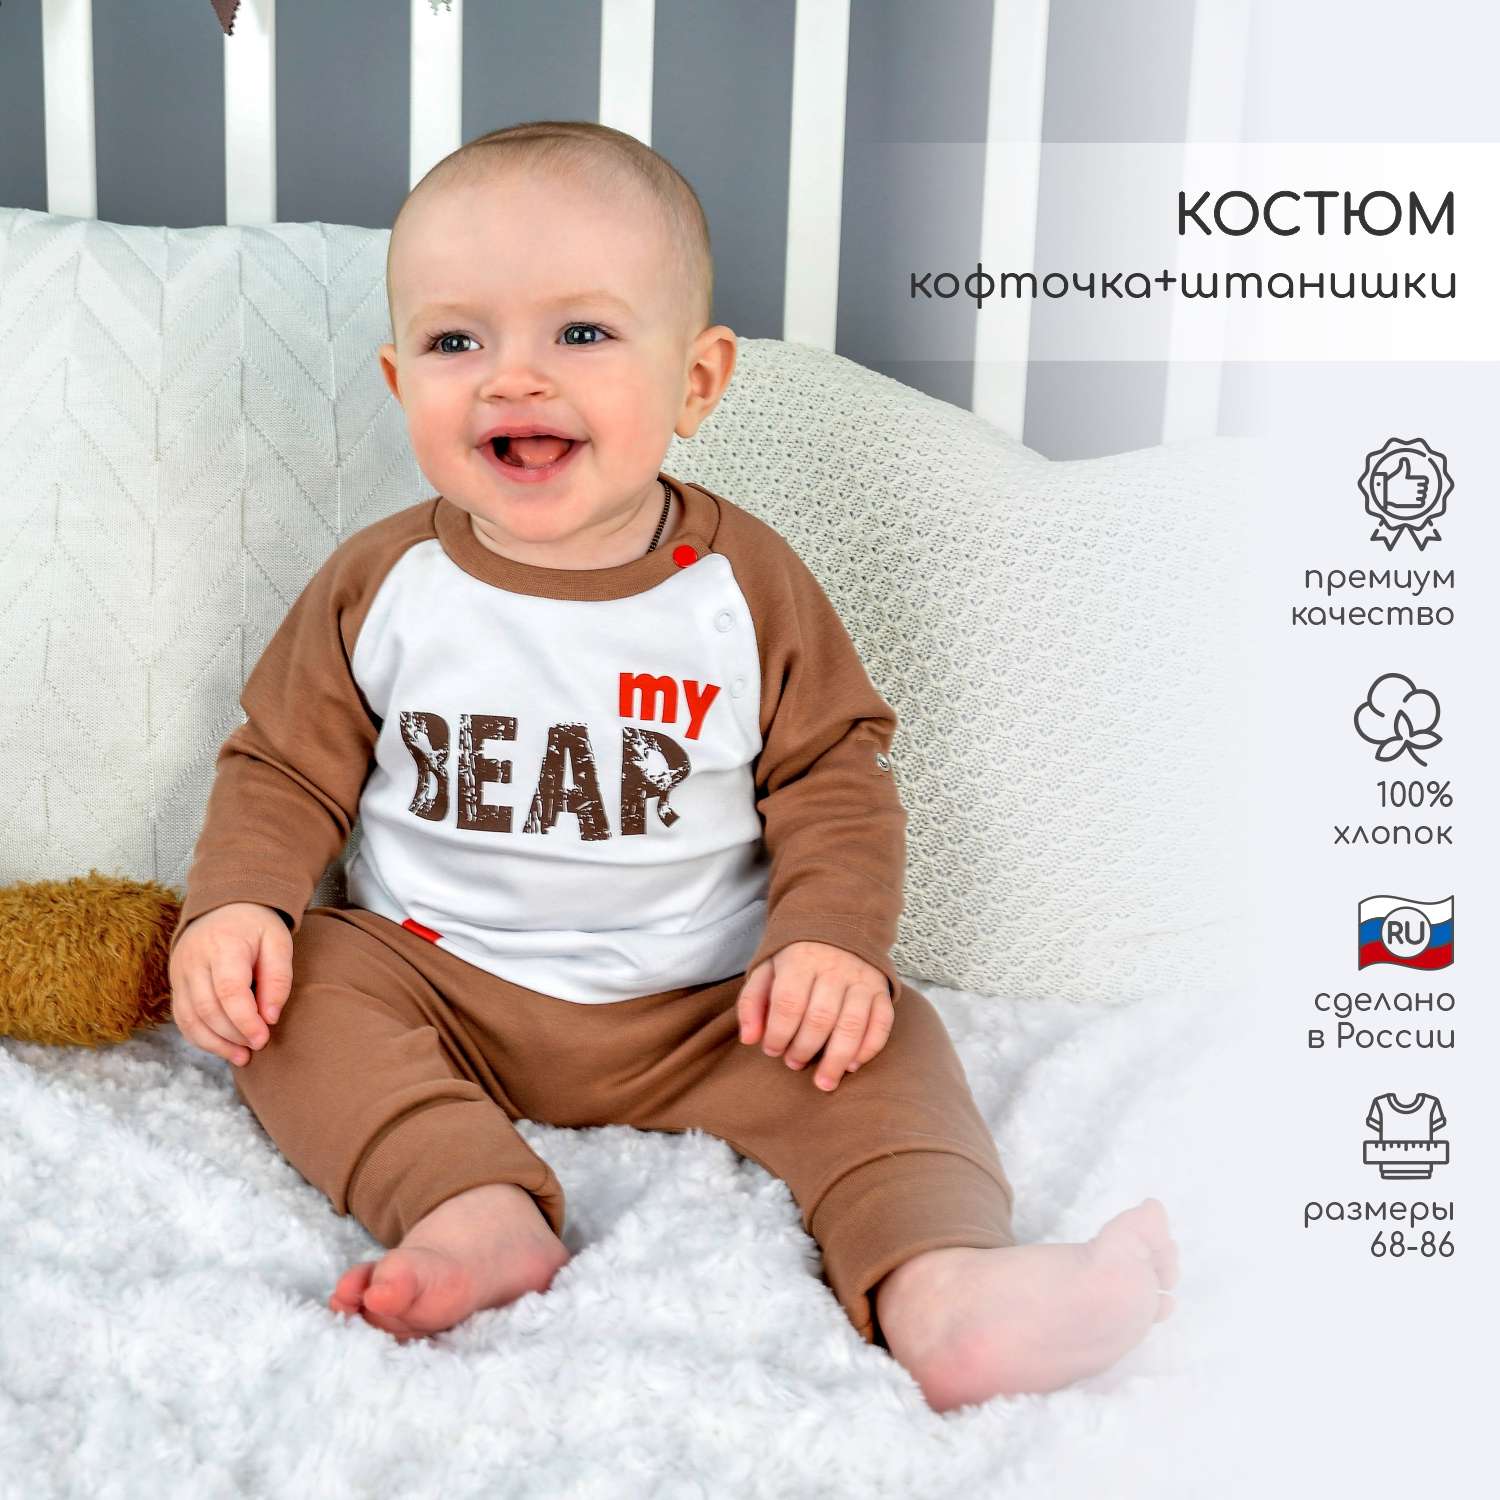 Купить одежду для мальчиков в интернет магазине kormstroytorg.ru